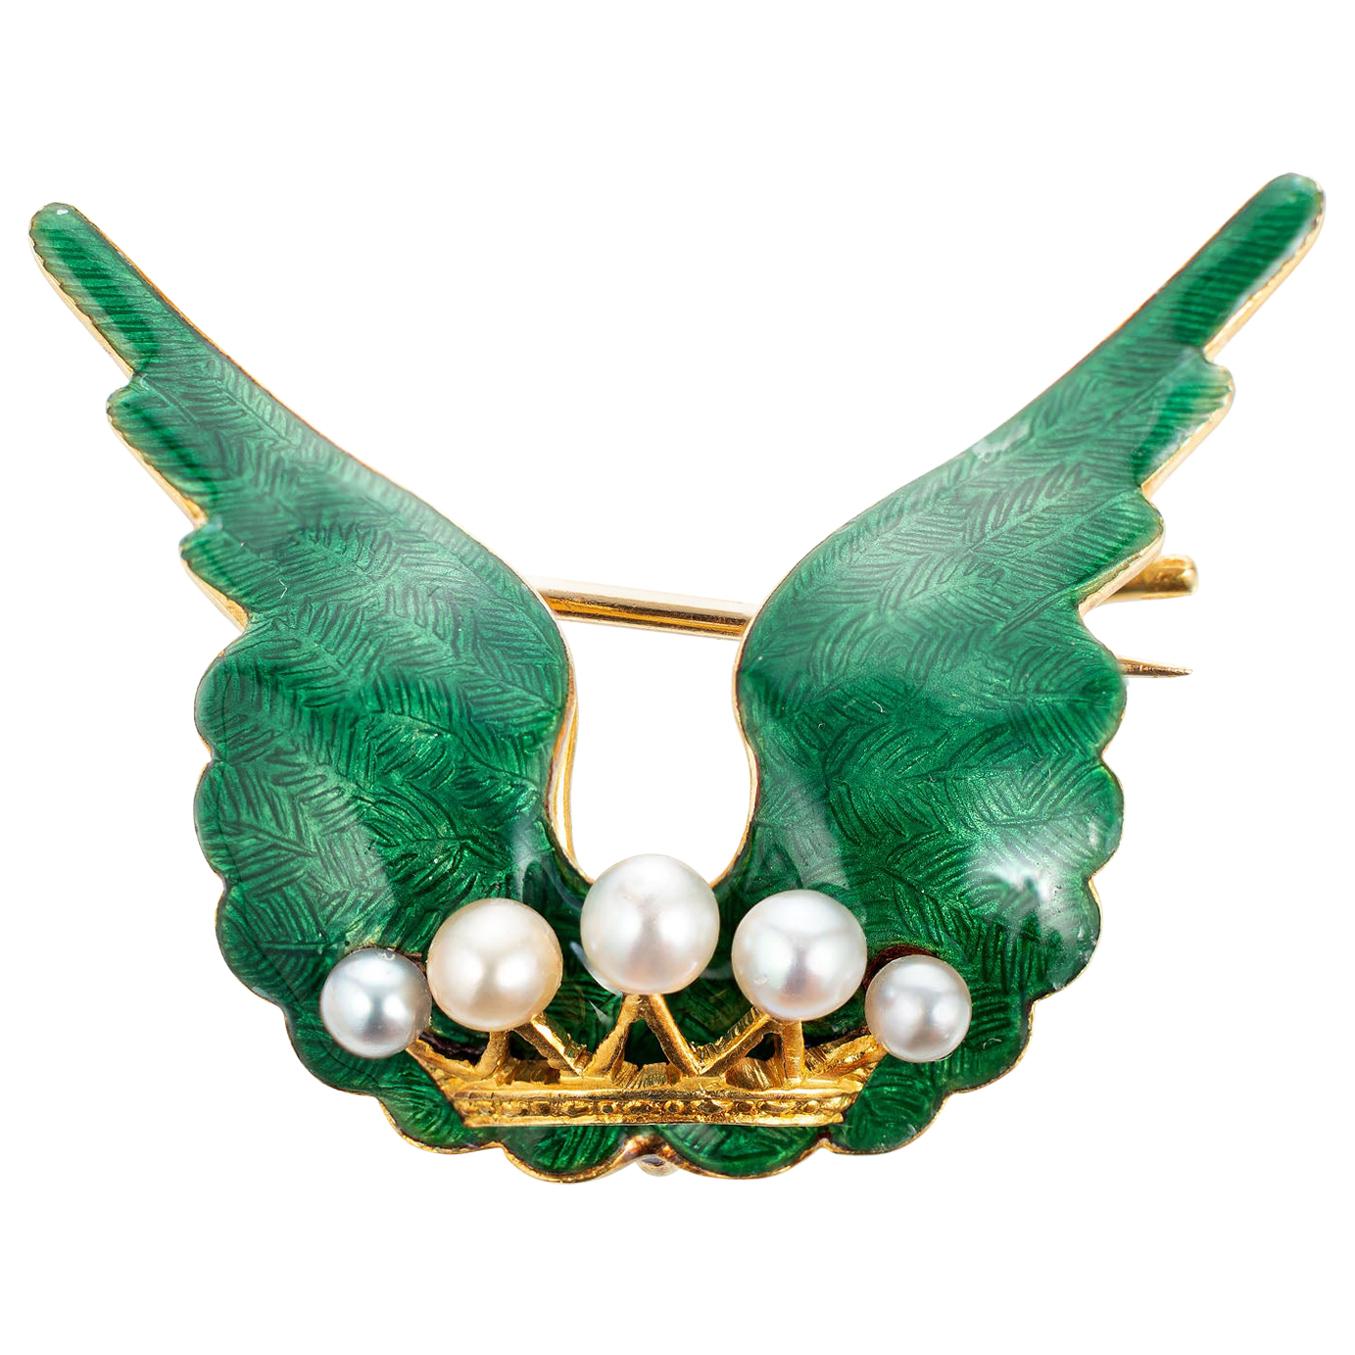 Brosche aus Gelbgold mit natürlicher Perle und grüner Emaille, viktorianisch